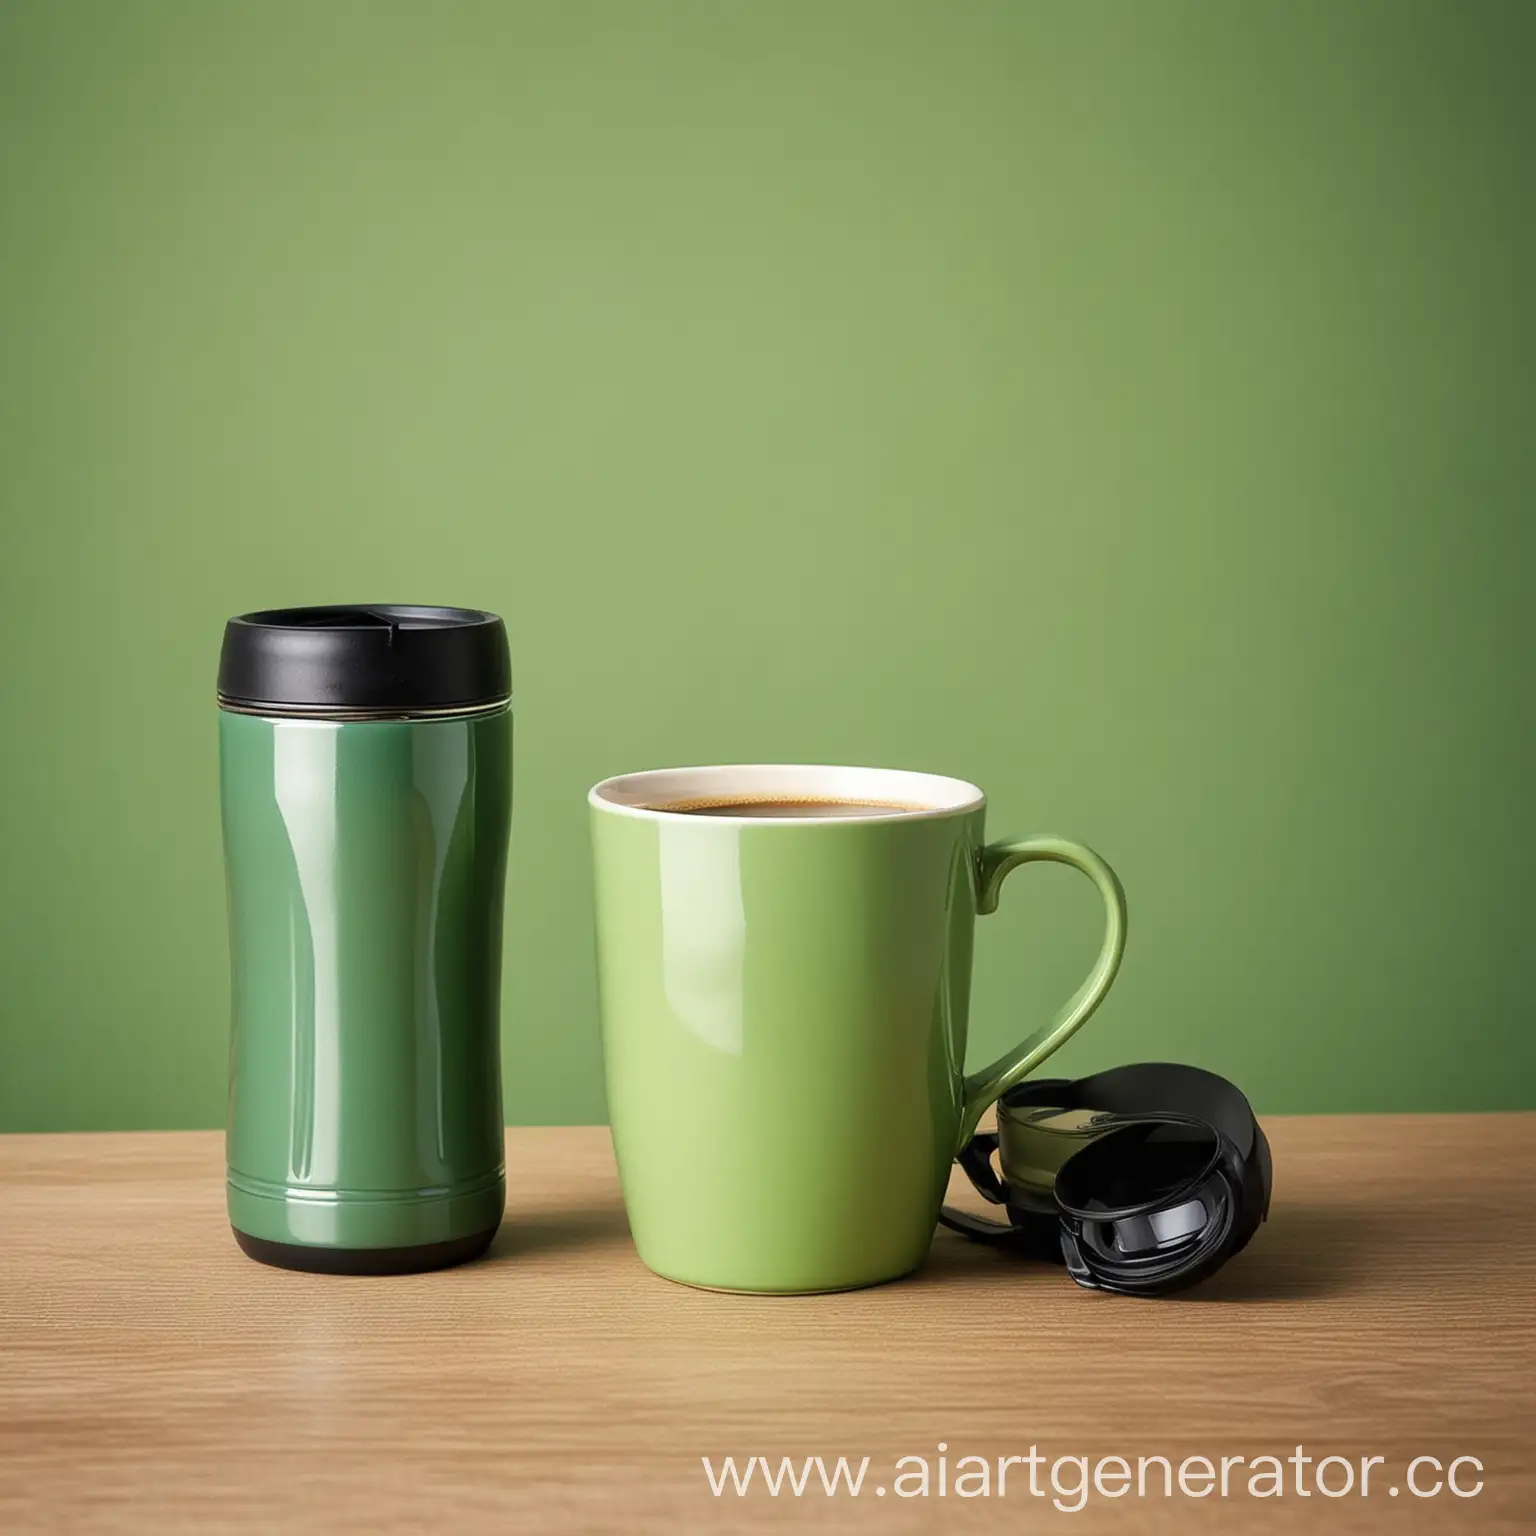 стаканчик для кофе, термокружка, на столе, на зеленом фоне, фотография высокого разрешения